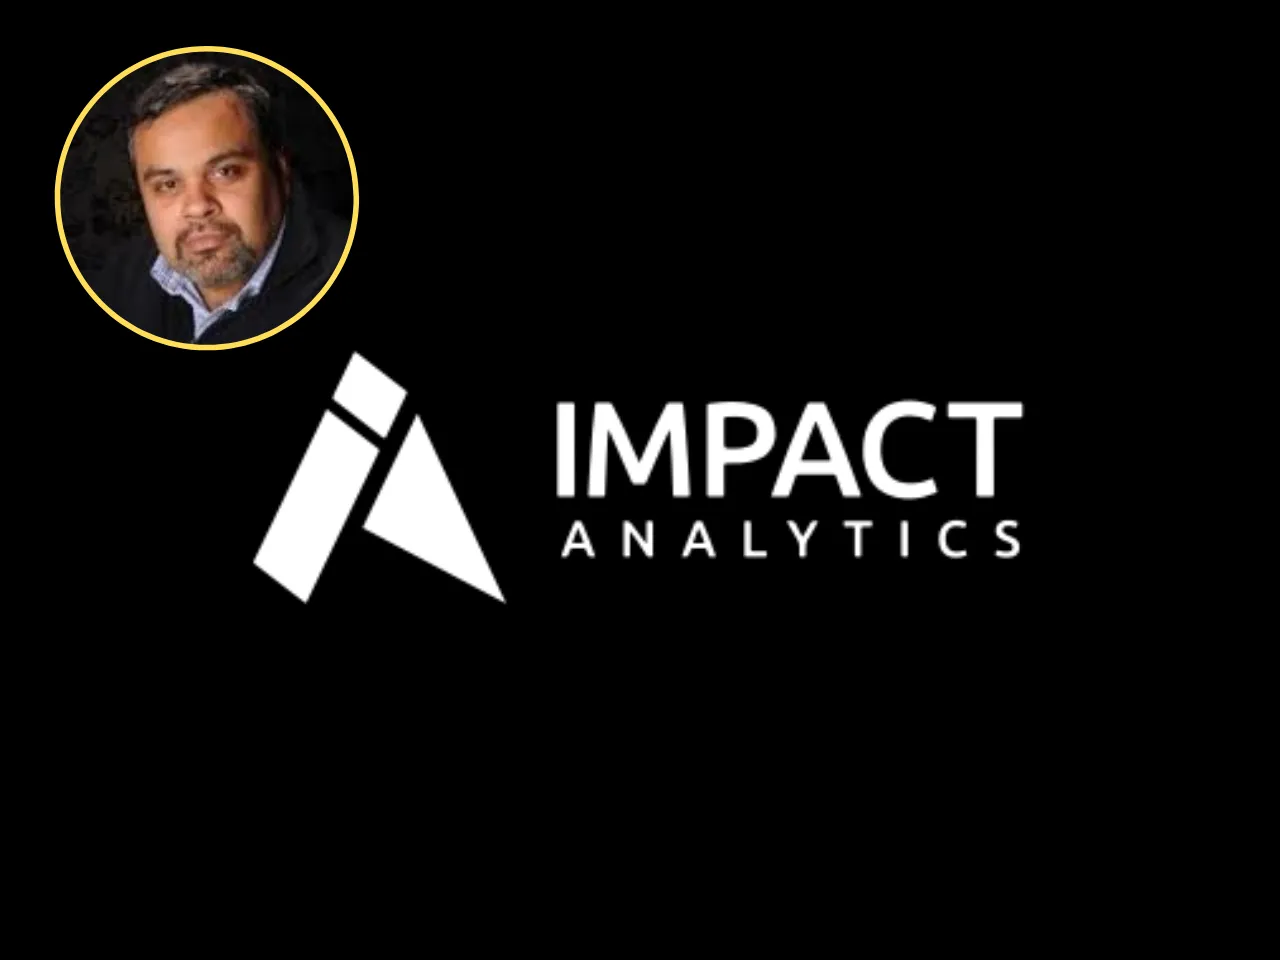 Impact Analytics Founder Prashant Agarwal